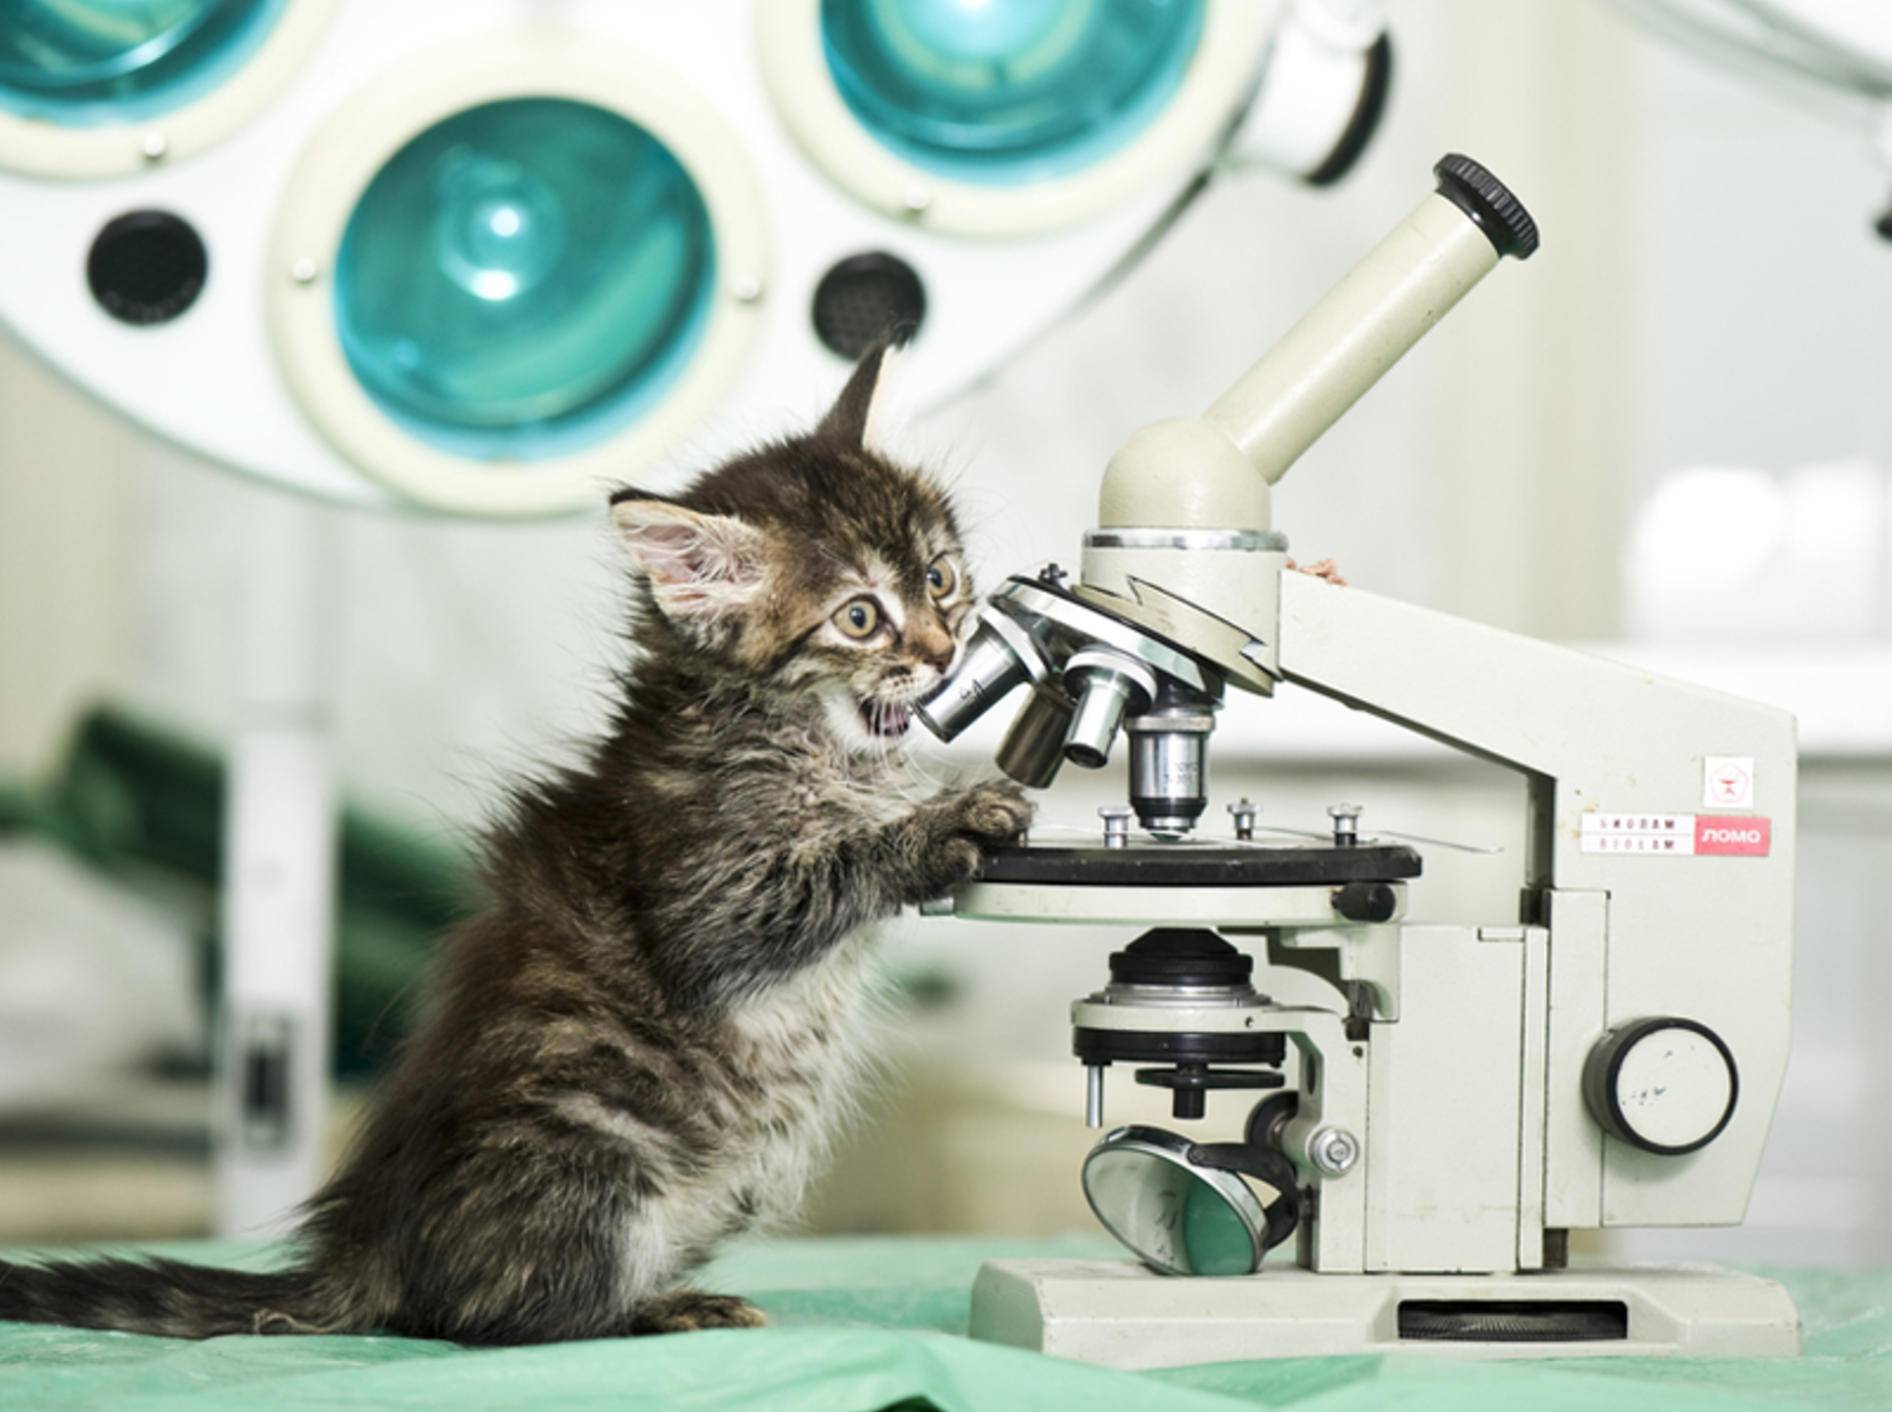 Ist eine Impfung gegen Tollwut bei Katzen wirklich nötig? – Bild: Shutterstock / Kachalkina Veronika